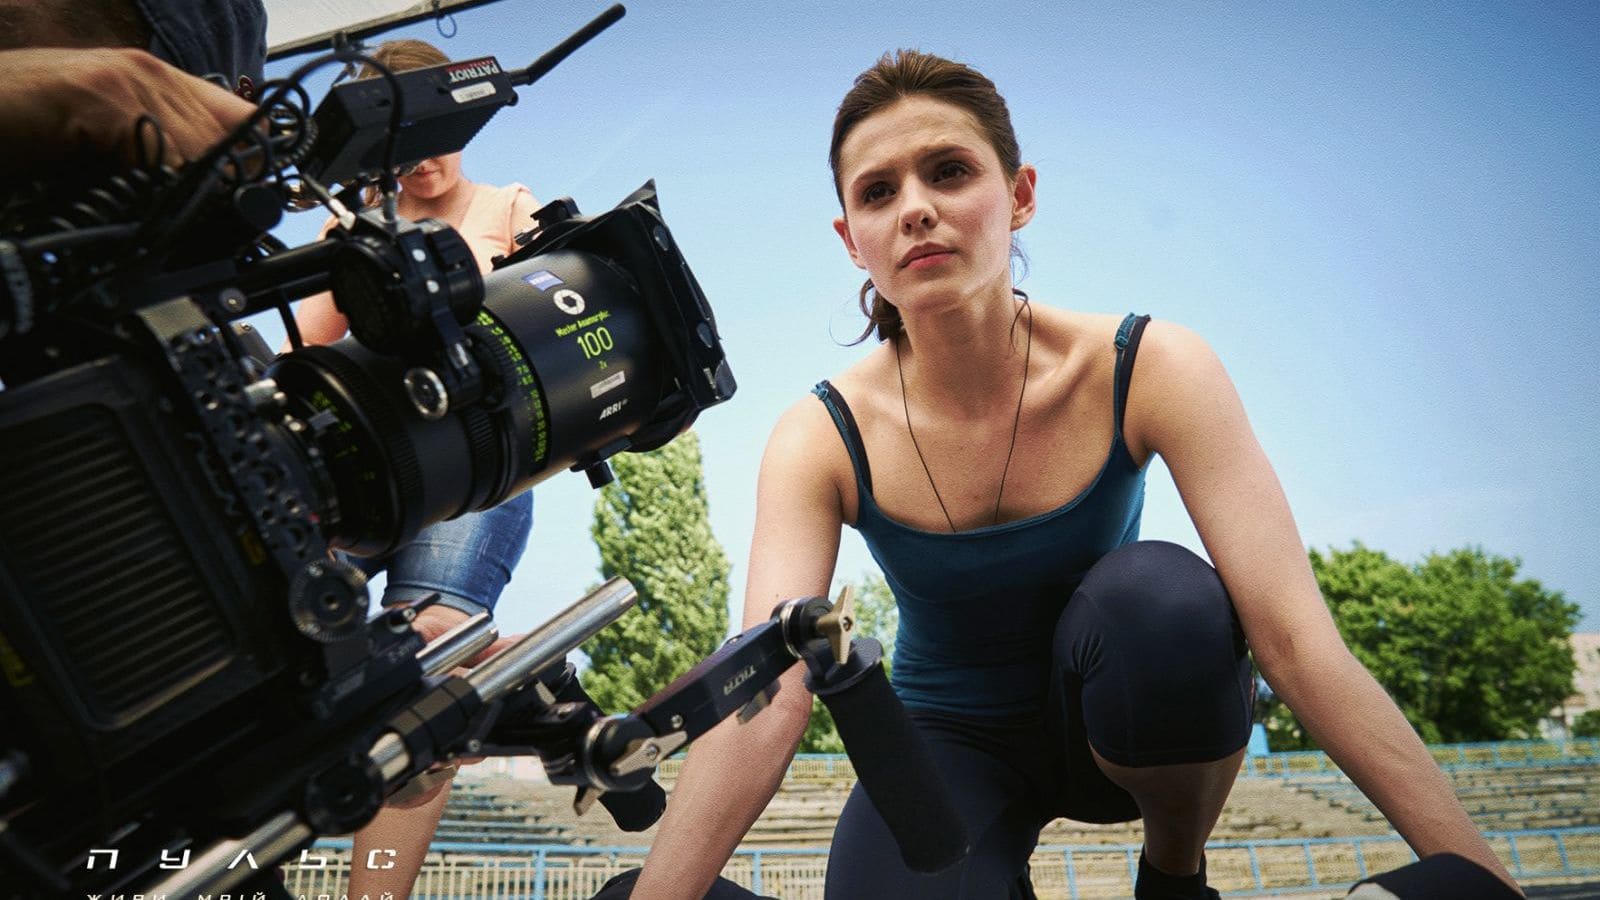 Украинская спортивная драма «Пульс» получила 4 номинации на международном кинофестивале в Полсоне (Монтана, США)